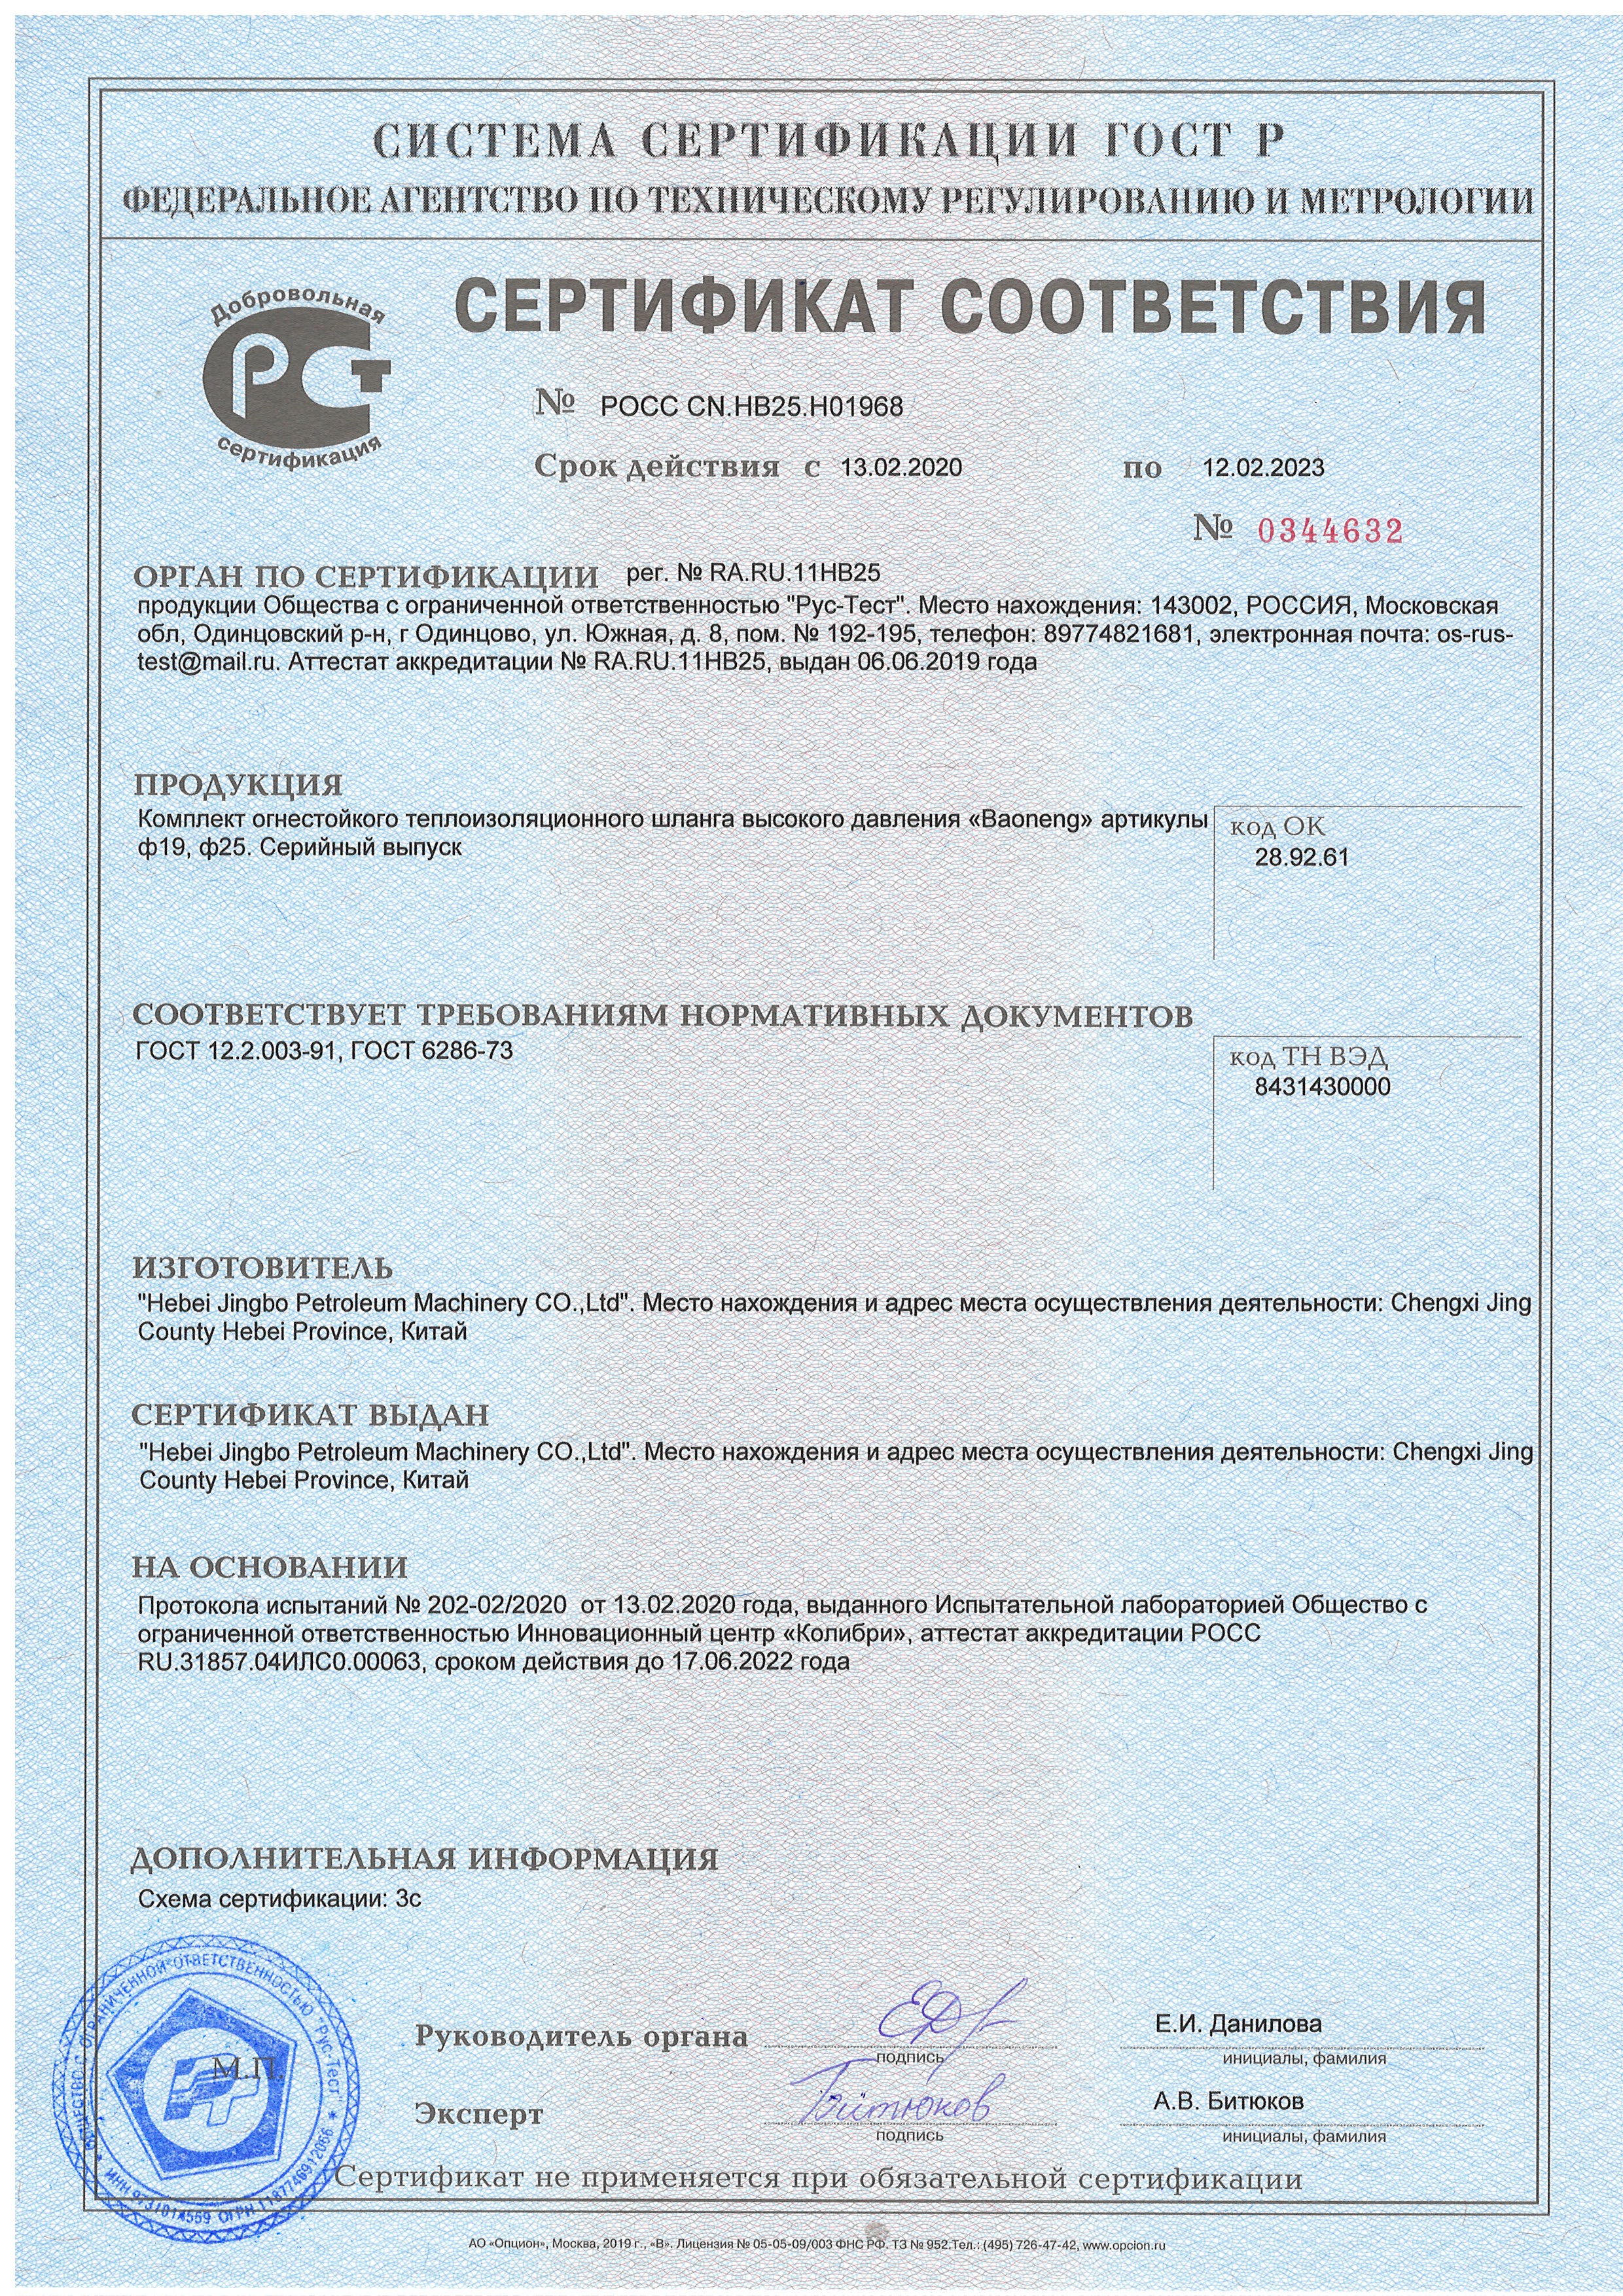 сертификат гост -комплект огнестойкого теплоизоляционного шланга высокого давления